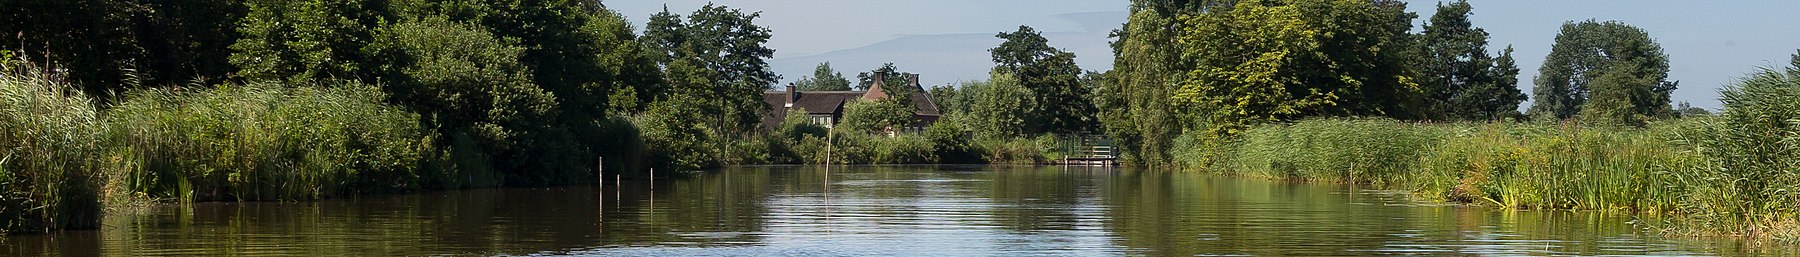 Woerdense Verlaat, Meije upė netoli Bosweg nuotrauka12 2017-07-09 11.01 pagebanner.jpg